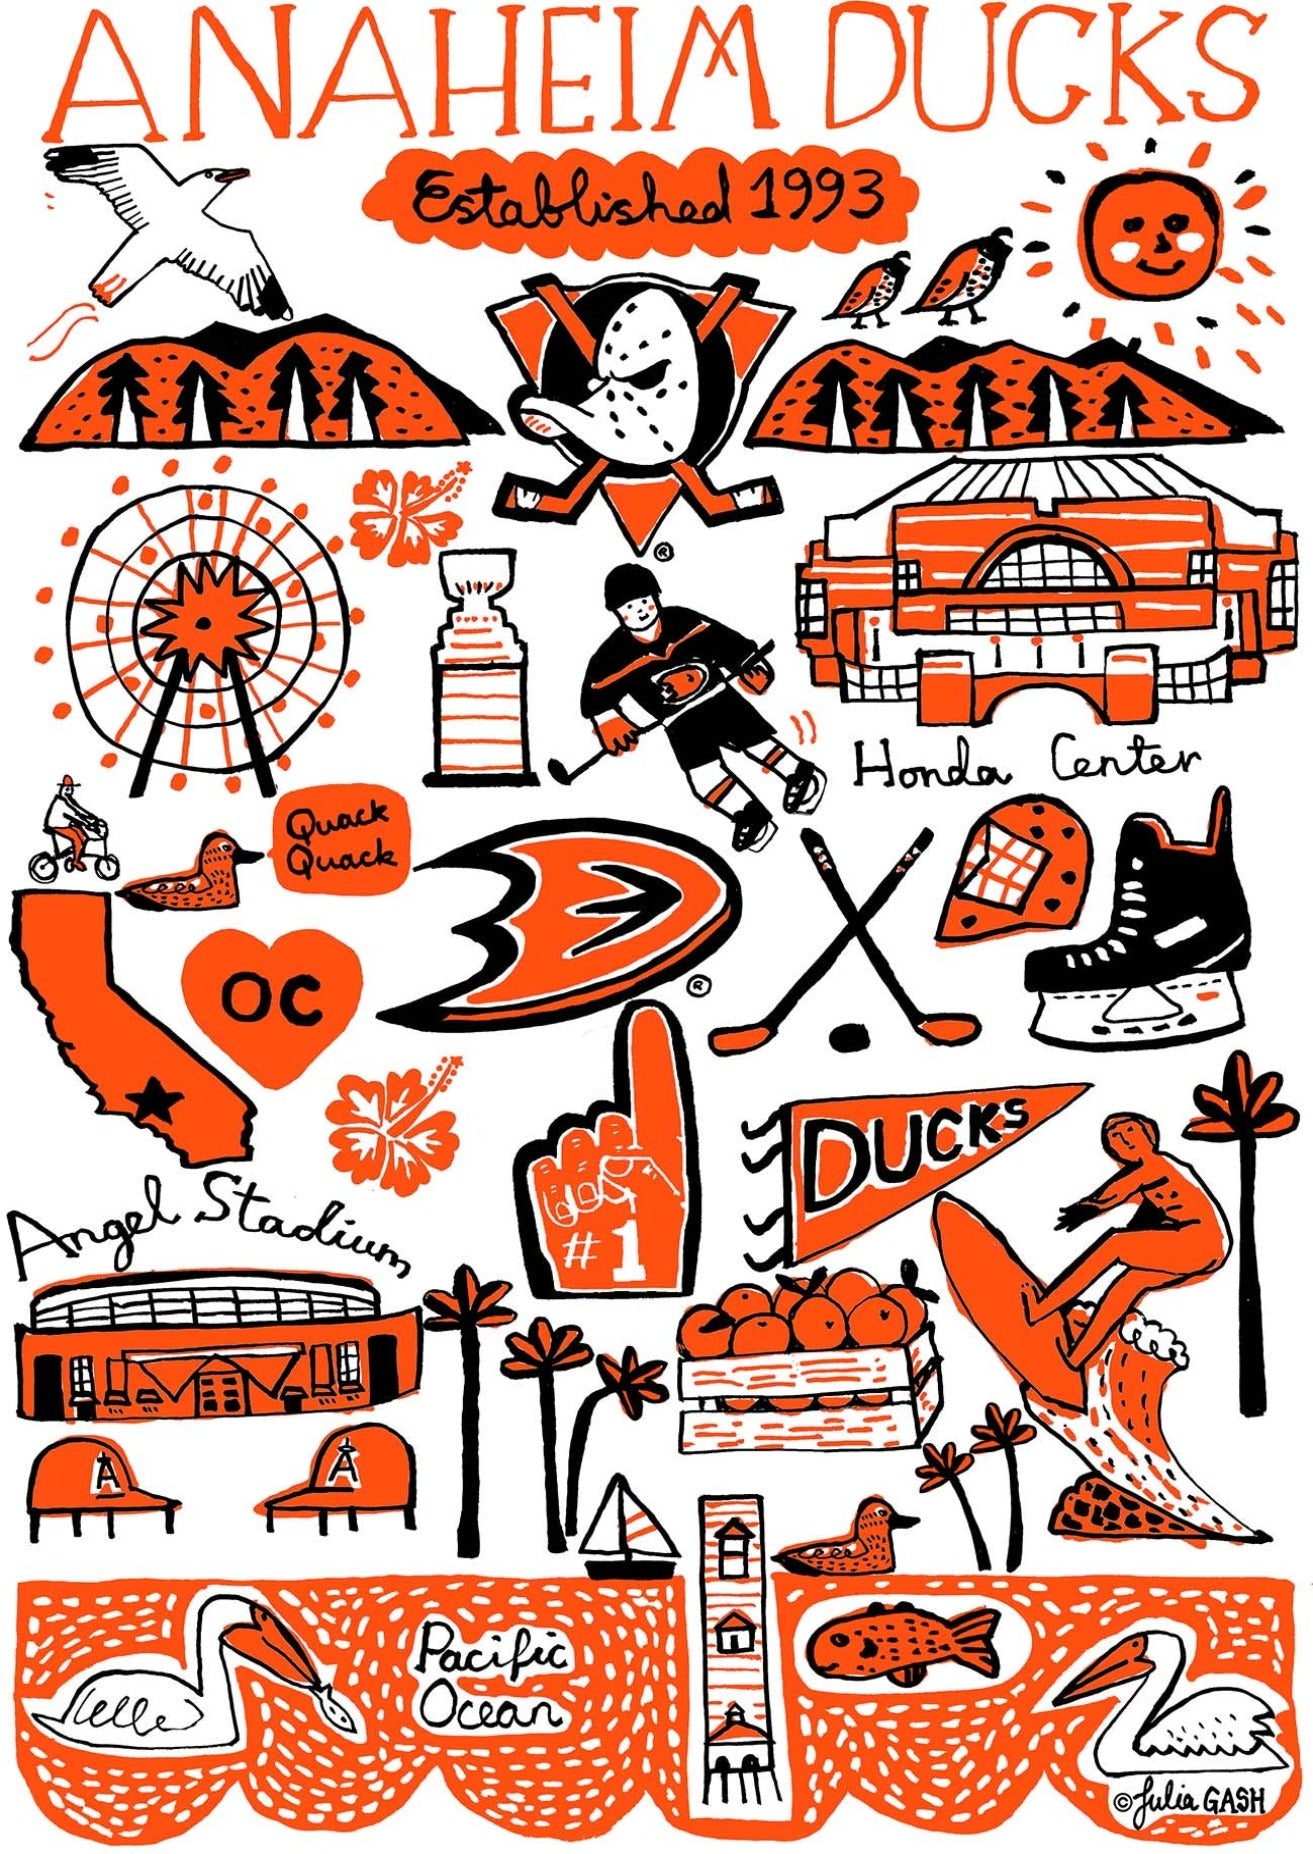 Anaheim Ducks Design by Julia Gash